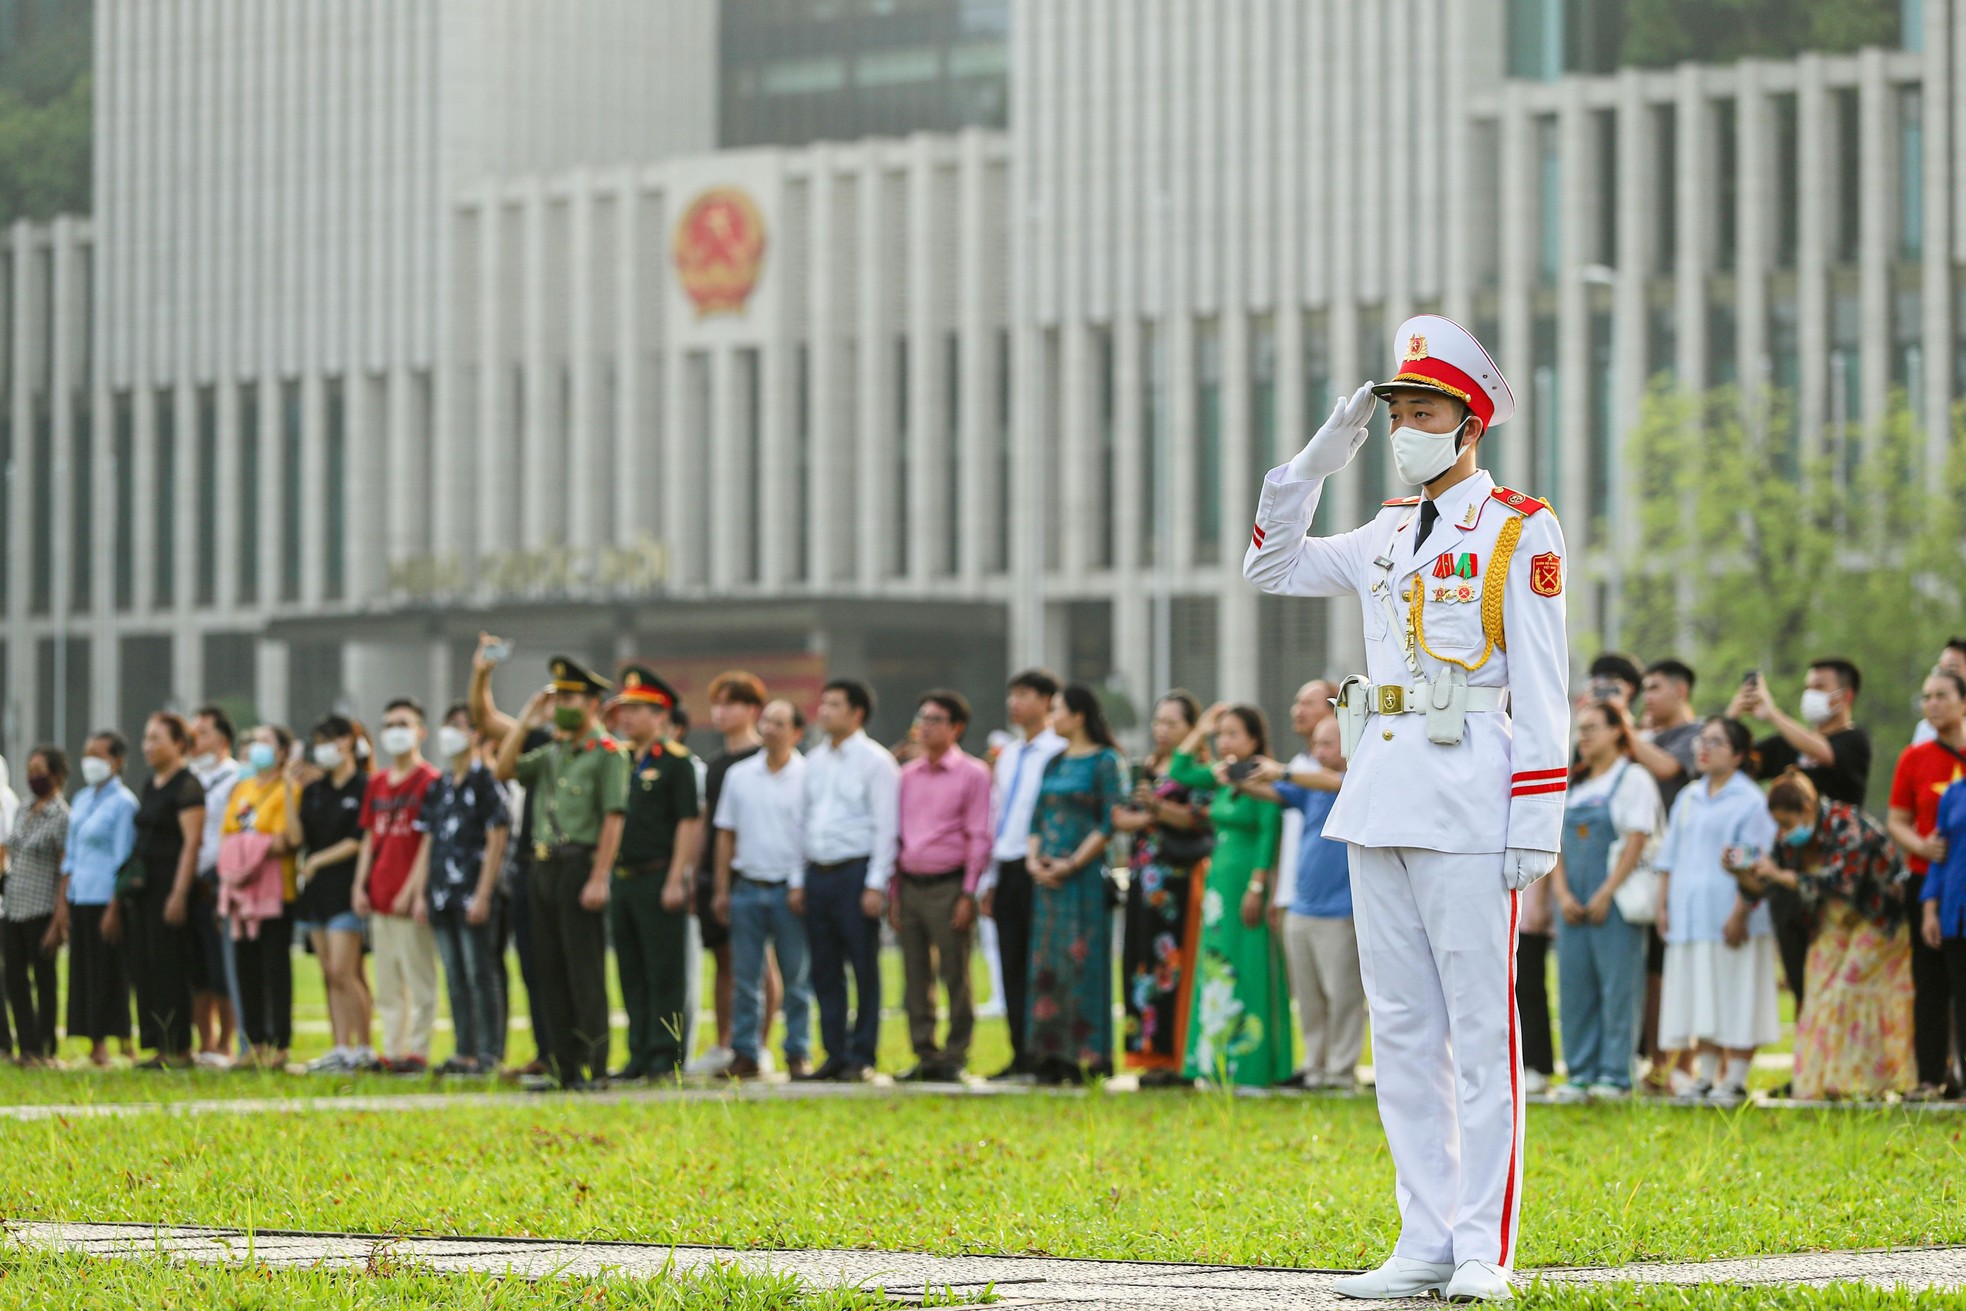 Nghi lễ thượng cờ mừng Quốc khánh 2/9 trong mỗi người đều có cảm xúc tự hào.